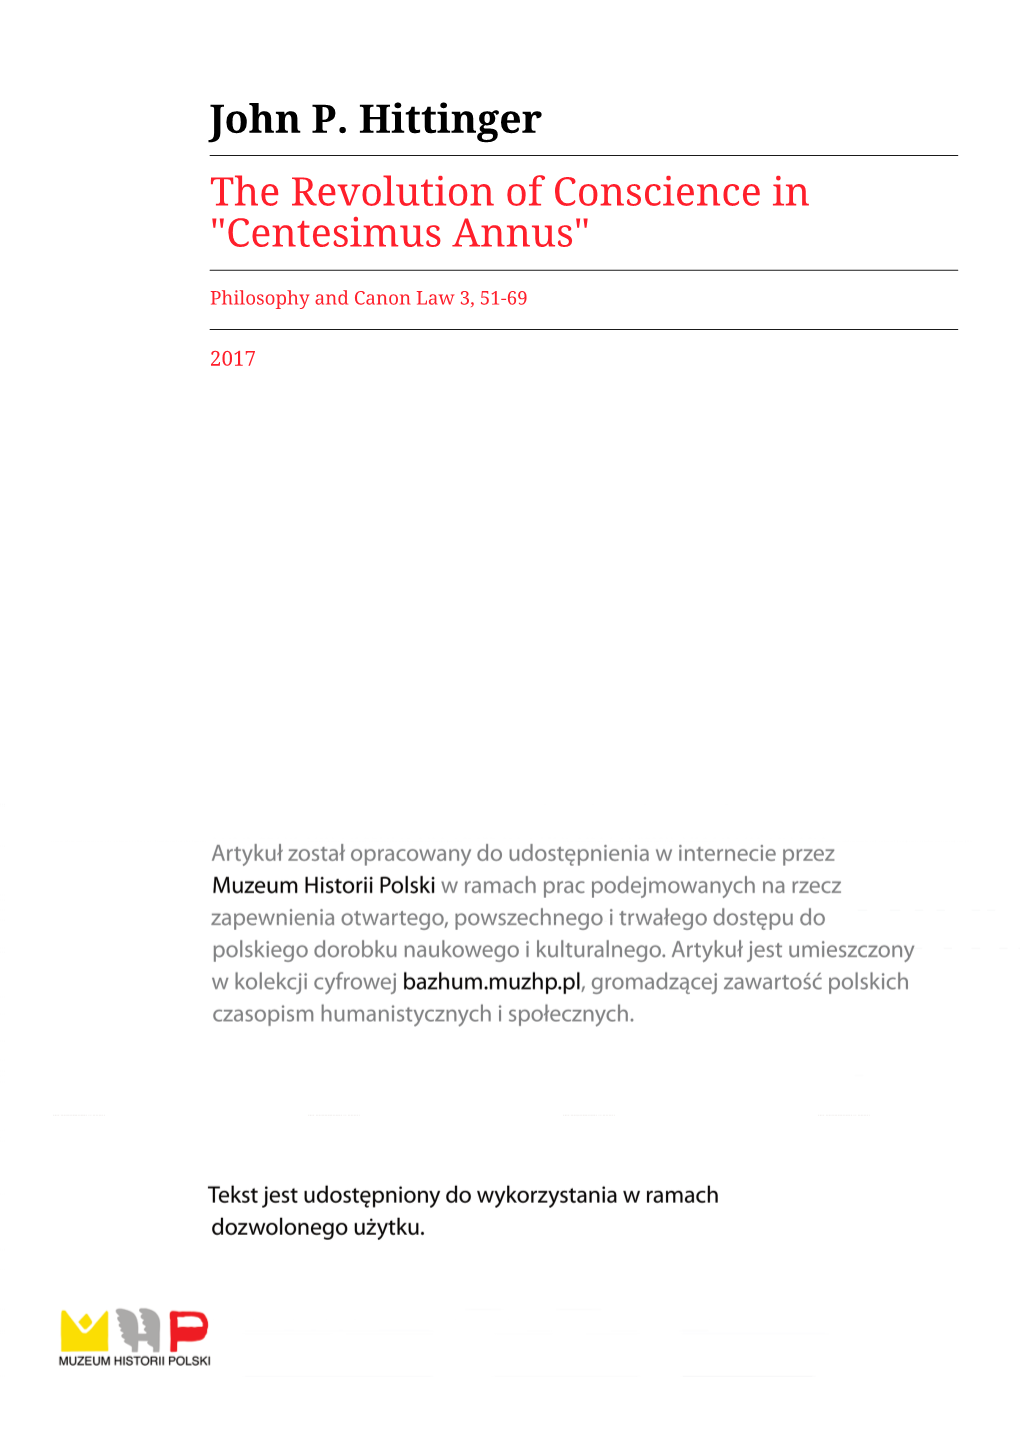 Centesimus Annus"